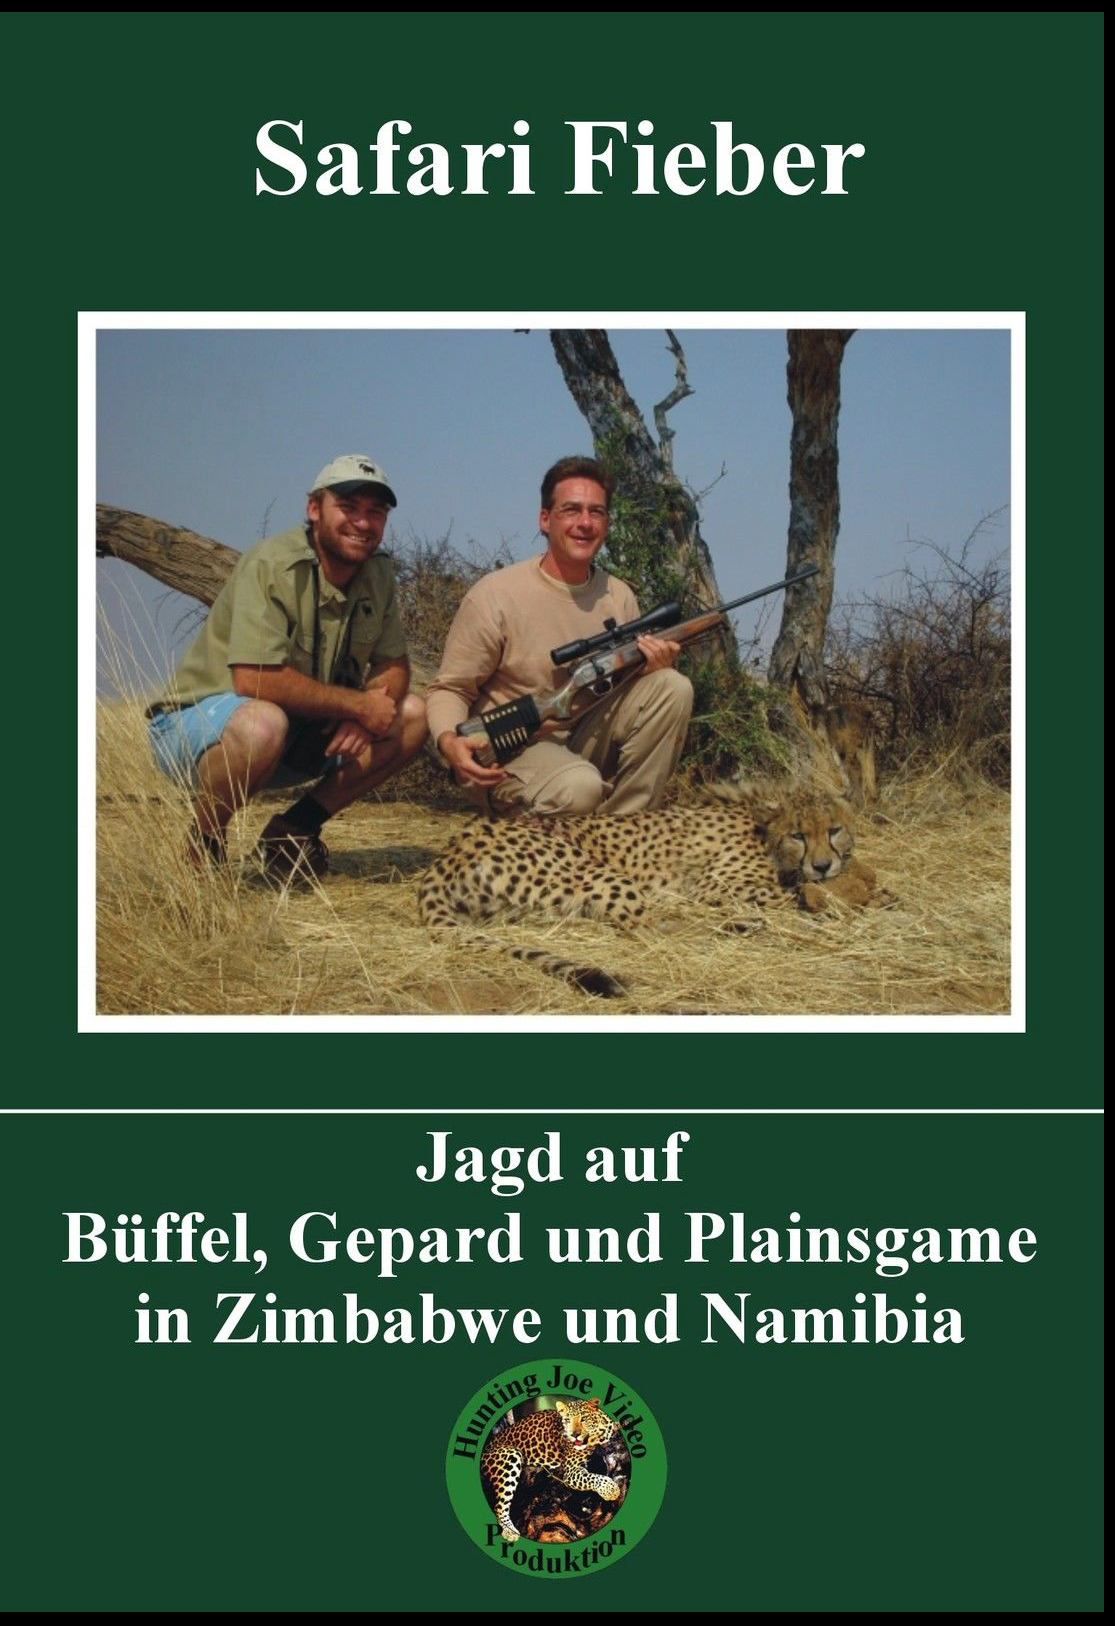 Safari Fieber: Jagd auf Büffel, Gepard, Plainsgame in Zimbabwe und Namibia (DVD)